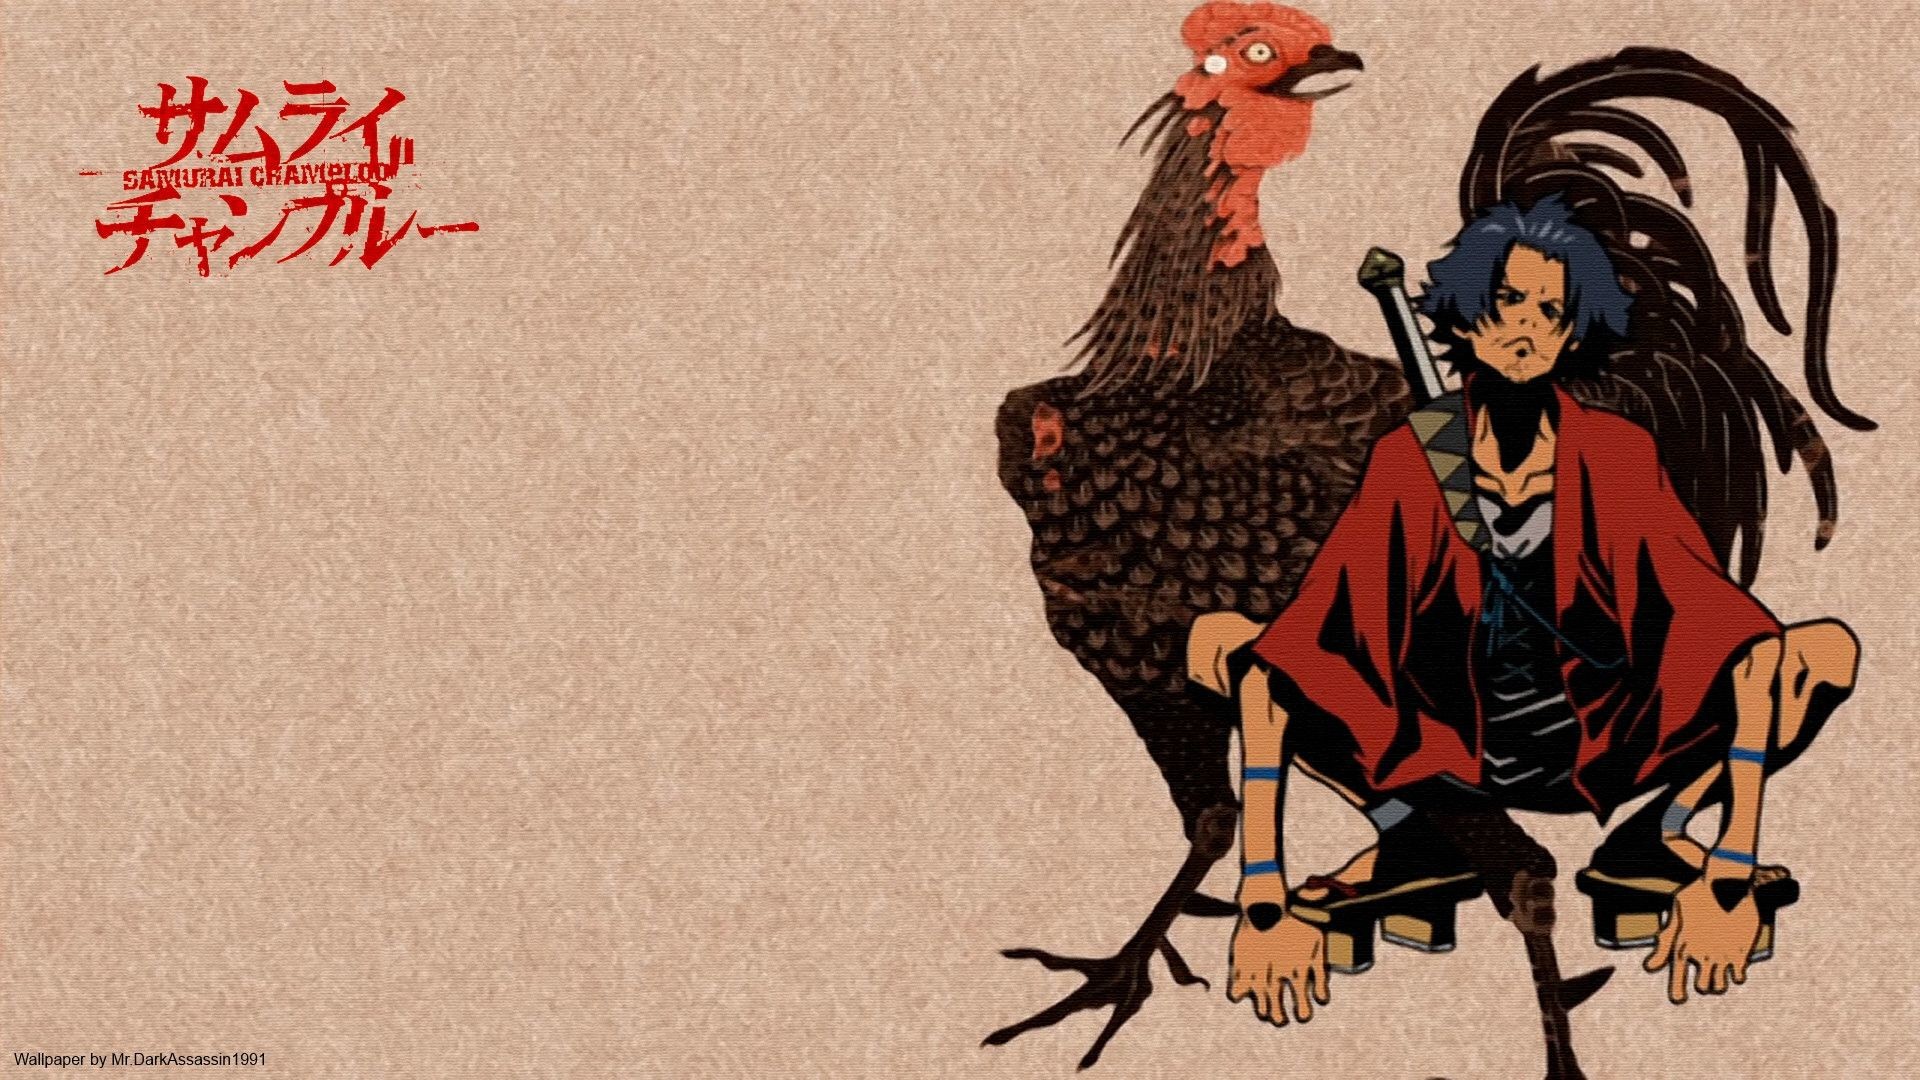 Samurai Champloo Background Image